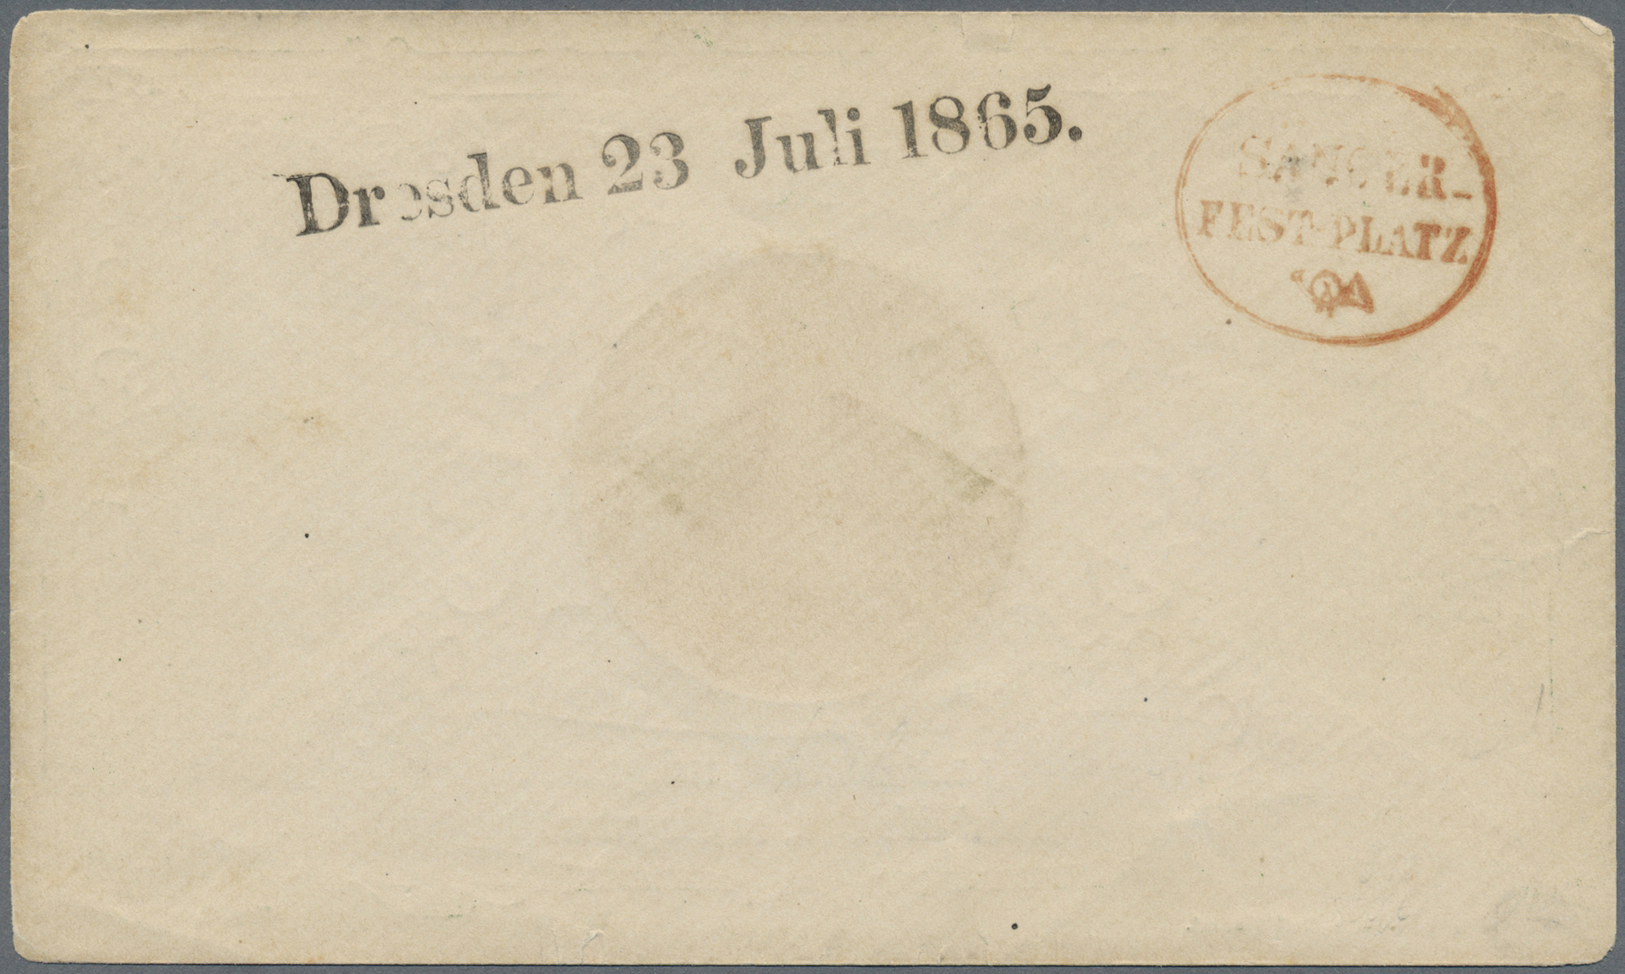 Br Sachsen - Ortsstempel: "Dresden 23 Juli 1865" Schwarzer L1 Und Roter Ovalstpl. "SÄNGER-FESTPLATZ" Au - Saxe